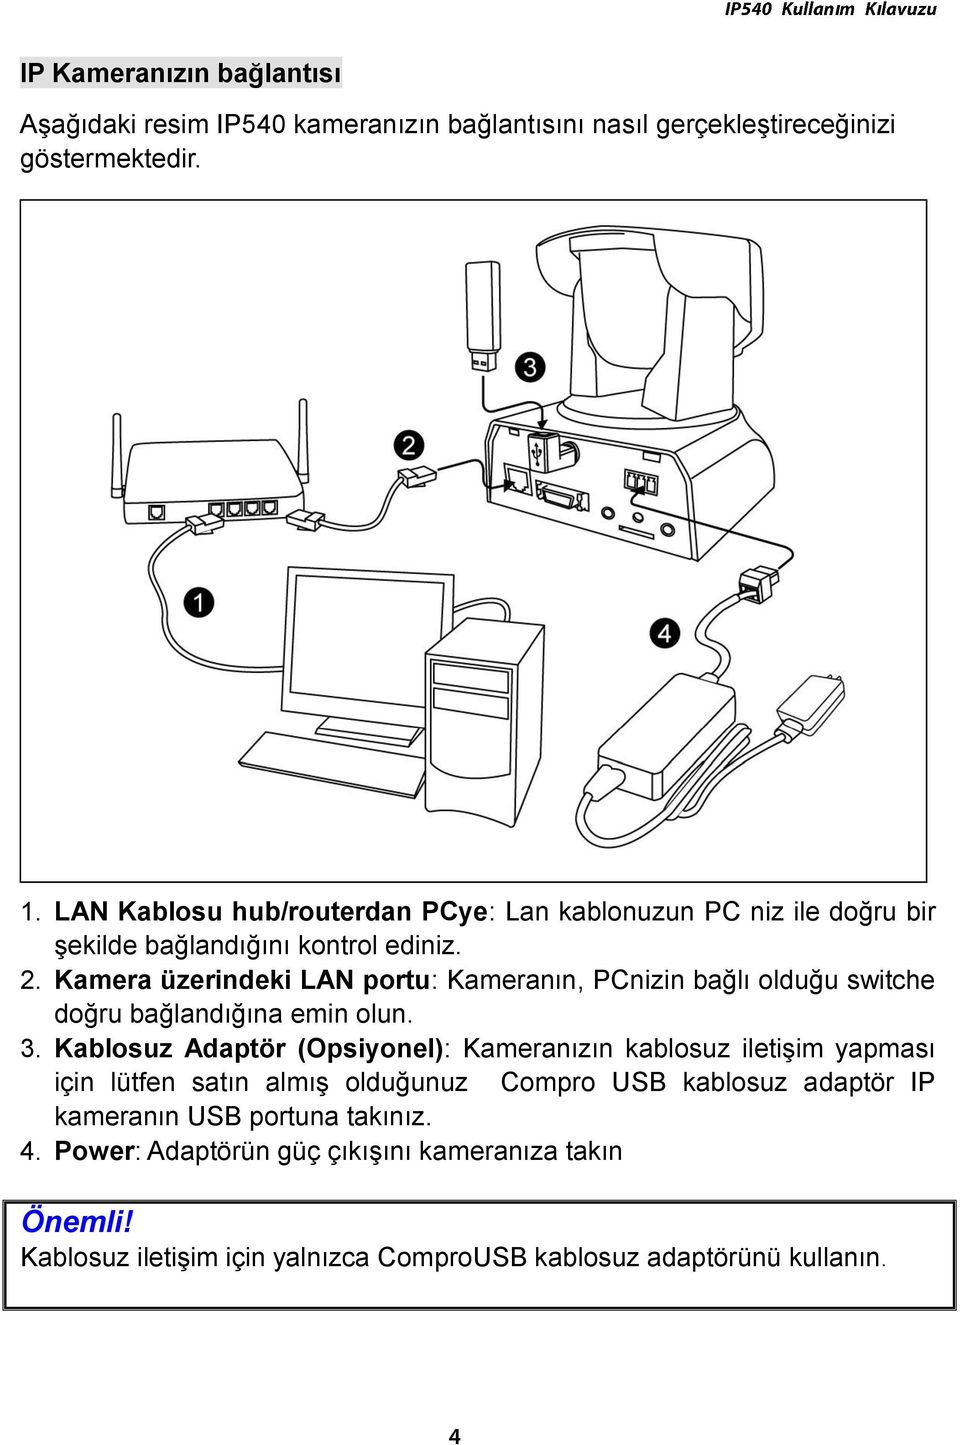 Kamera üzerindeki LAN portu: Kamerann, PCnizin bağl olduğu switche doğru bağlandğna emin olun. 3.